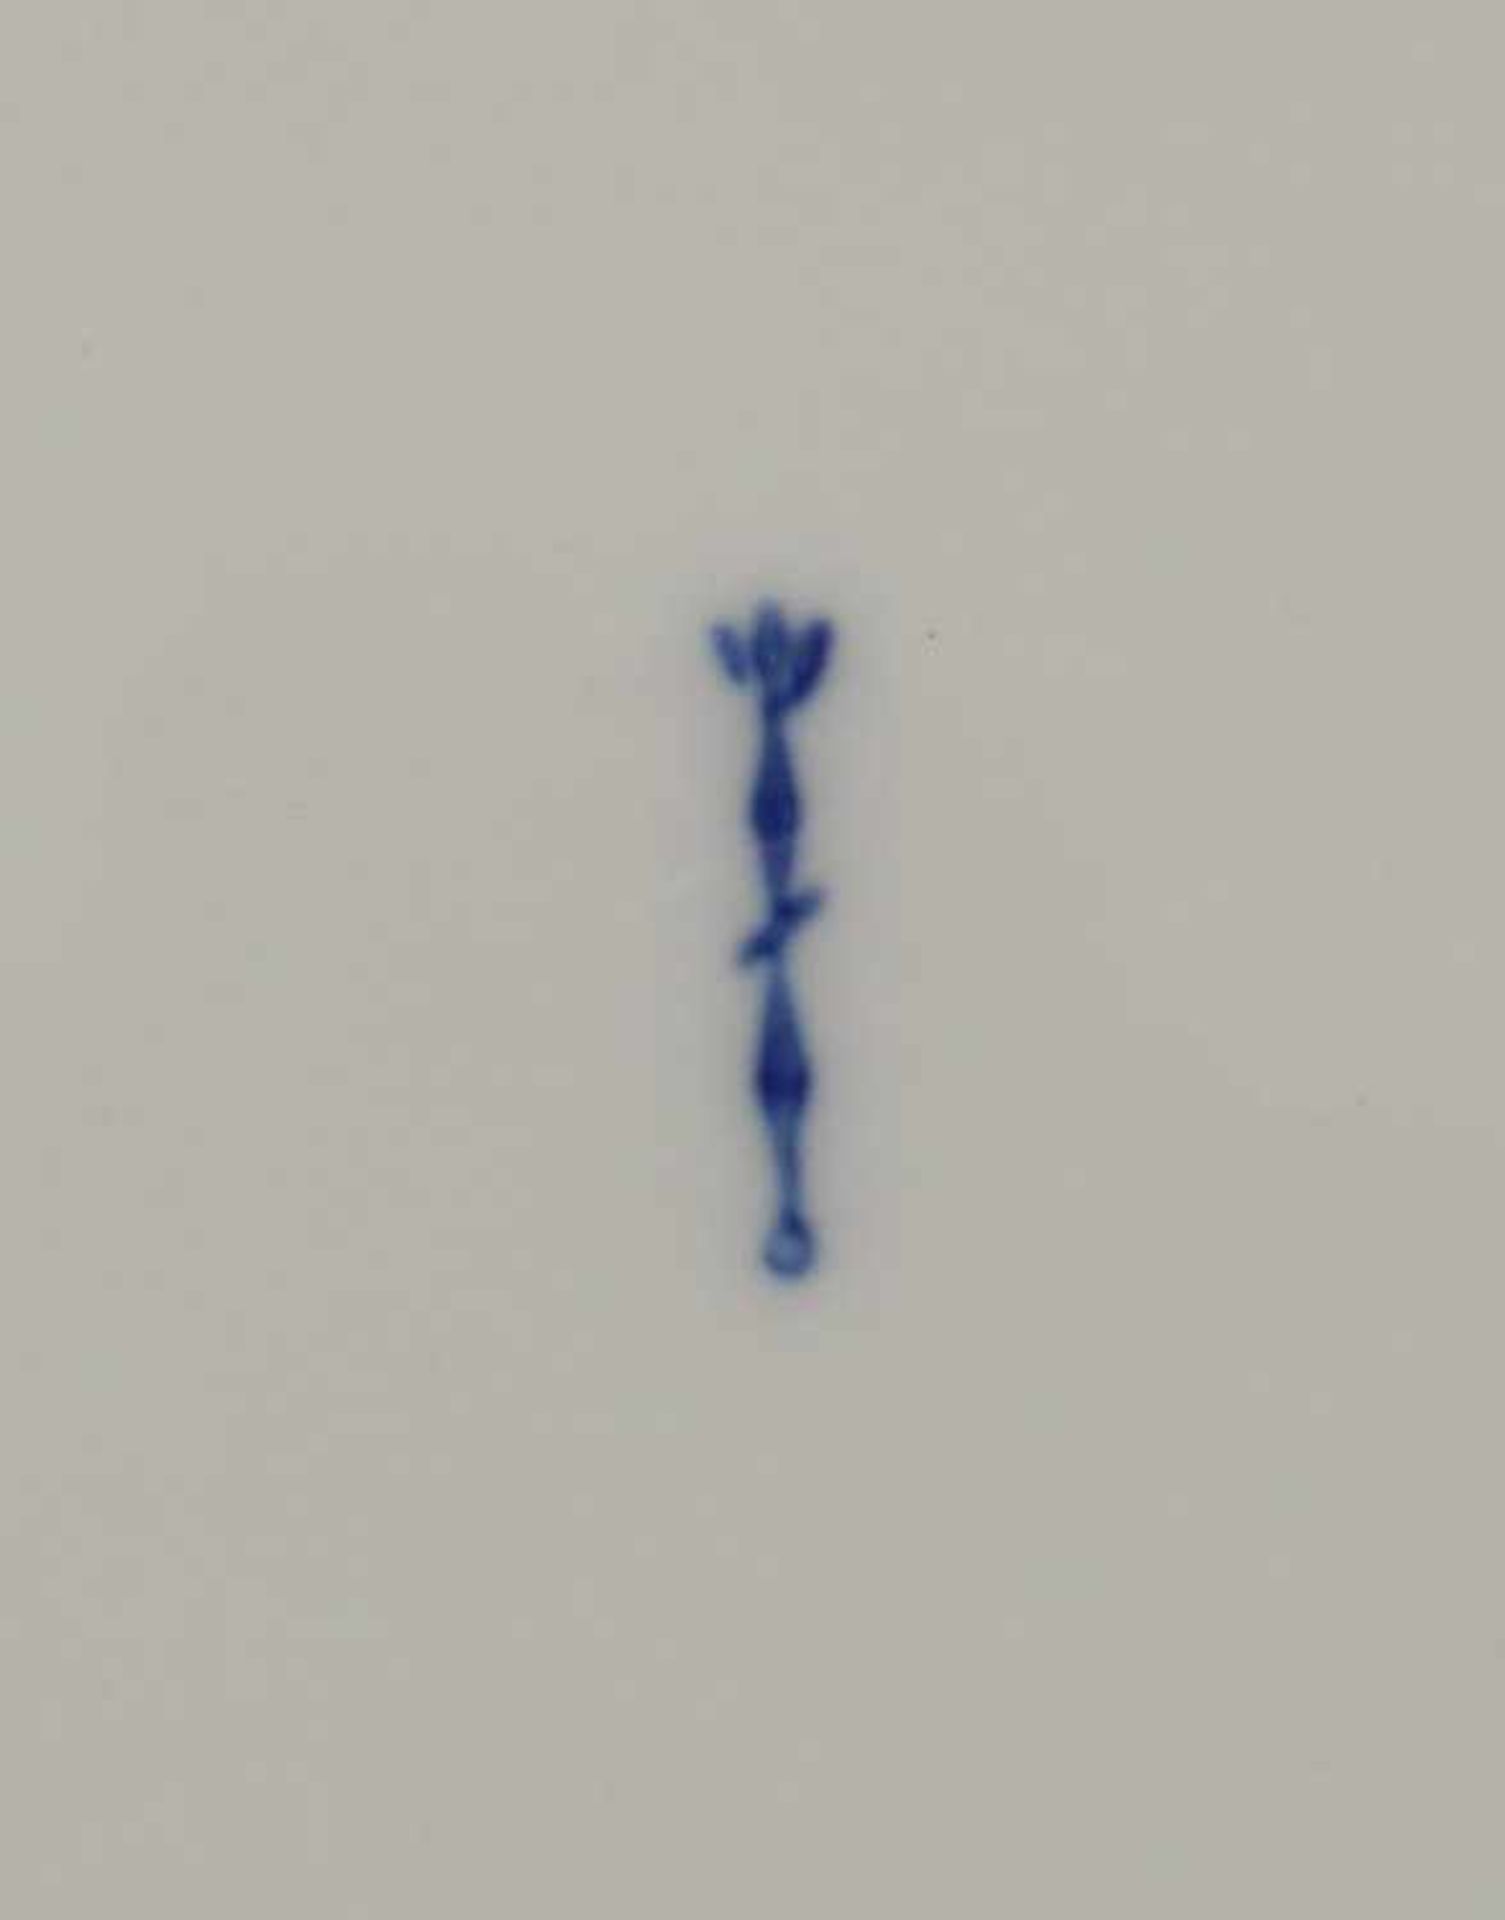 KPM - Schalen1962-92, blaue Zeptermarke, 2. Wahl, 2 St., 1x oval-bauchige Henkelschale, 1x rundliche - Bild 2 aus 2